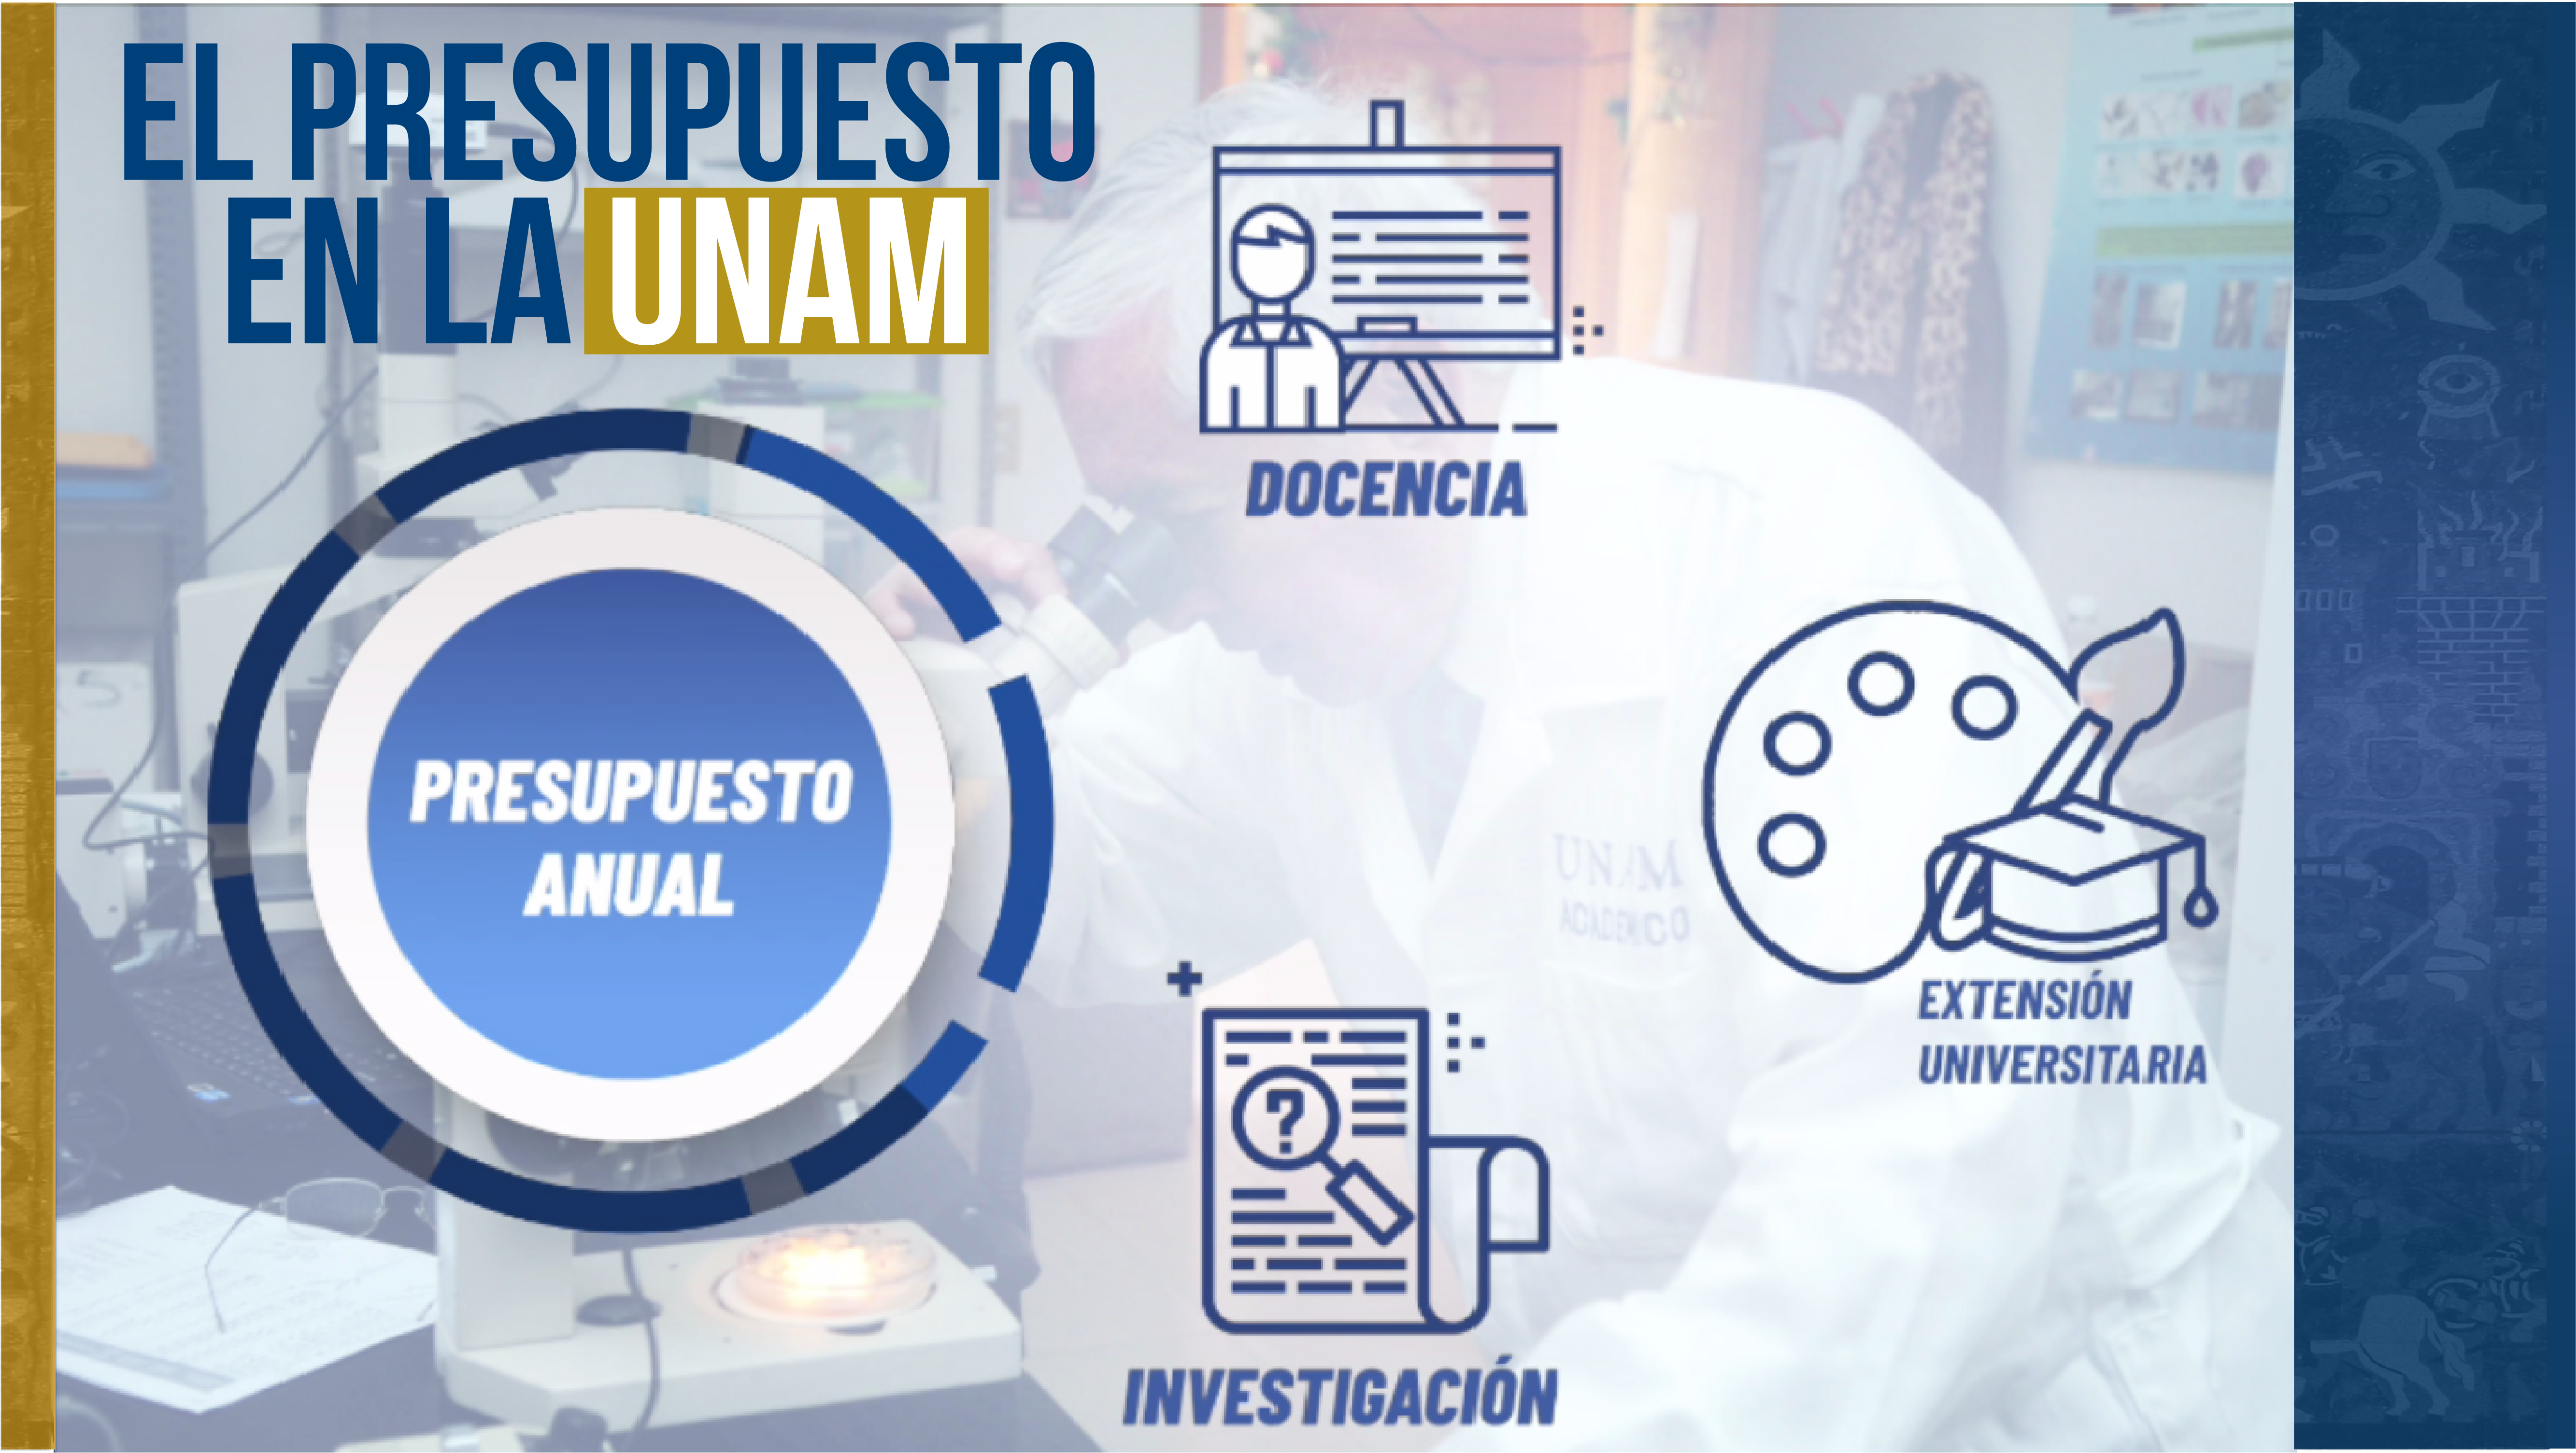 01 El presupuesto en la UNAM 01